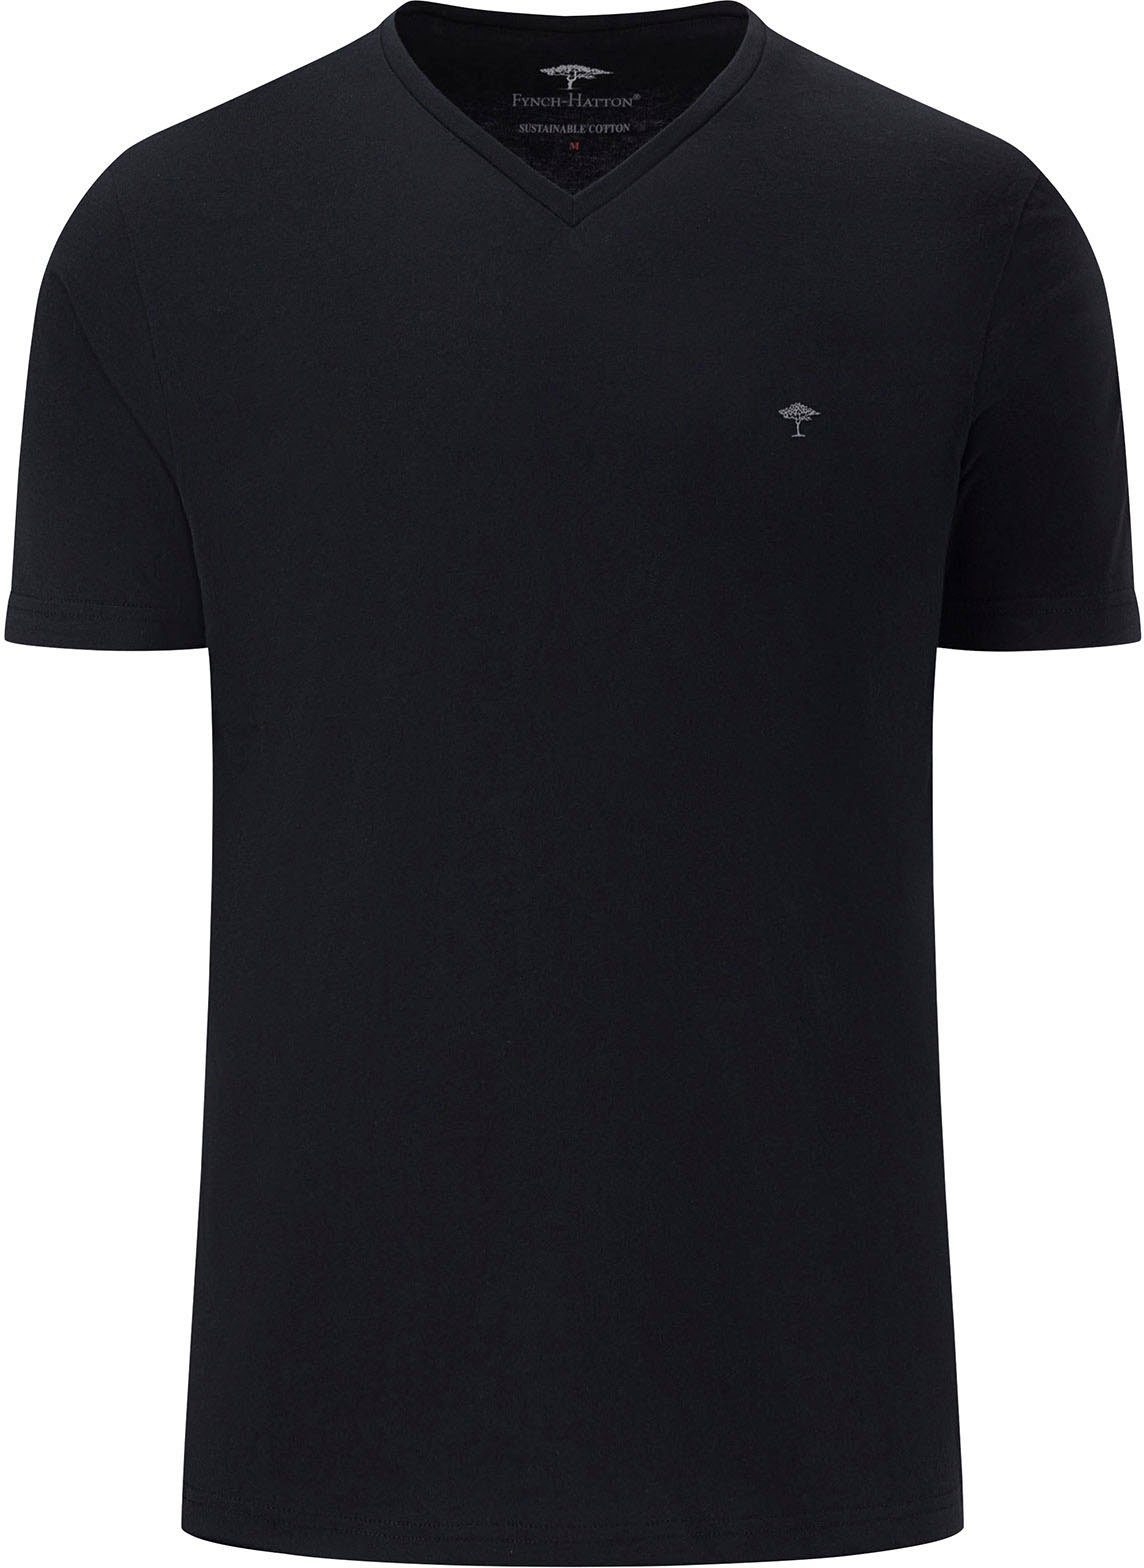 FYNCH-HATTON V-Shirt mit Logostickerei schwarz